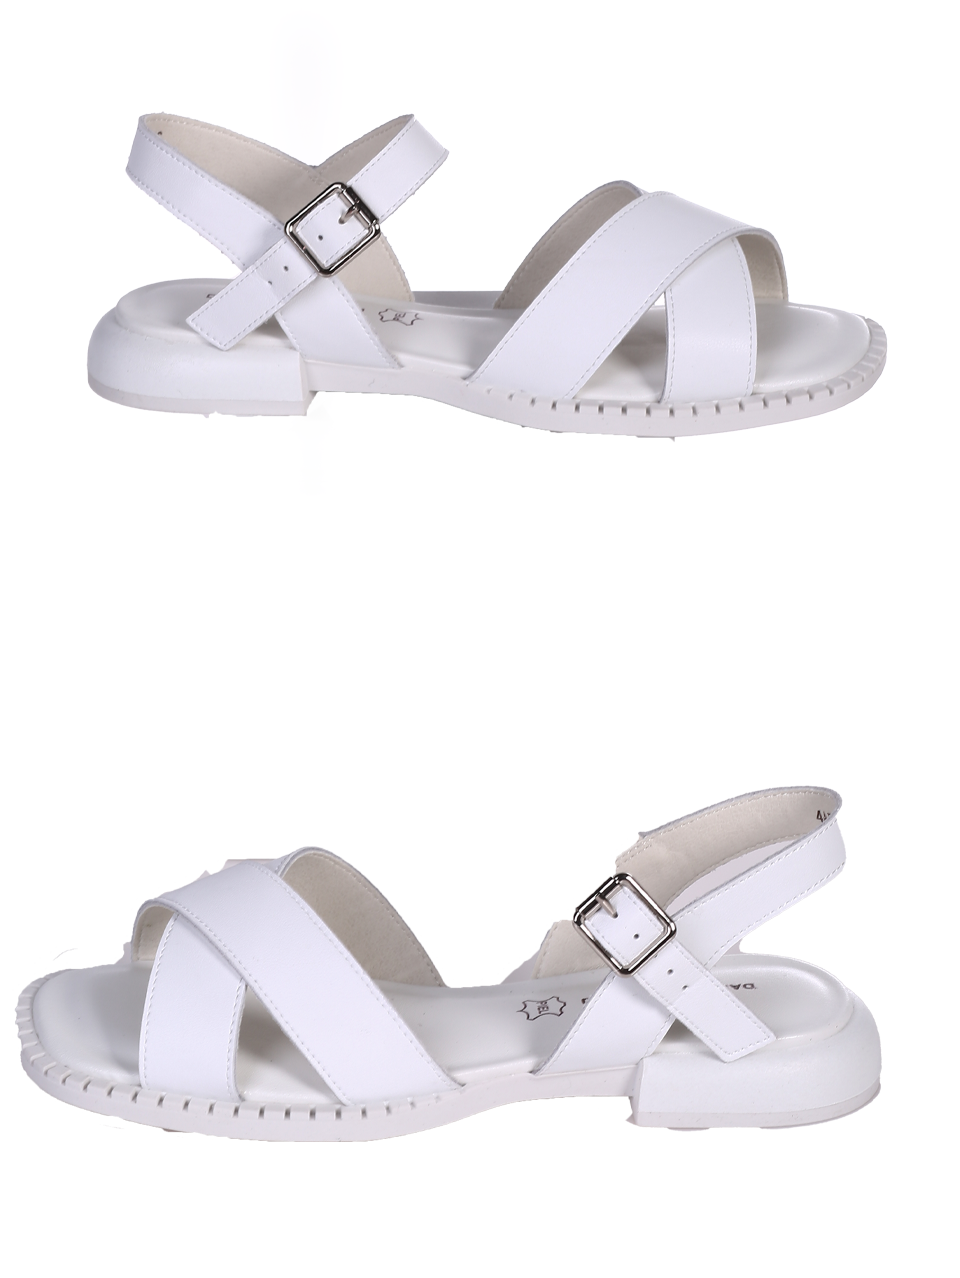 Ежедневни дамски сандали в бяло 4AF-24172 white